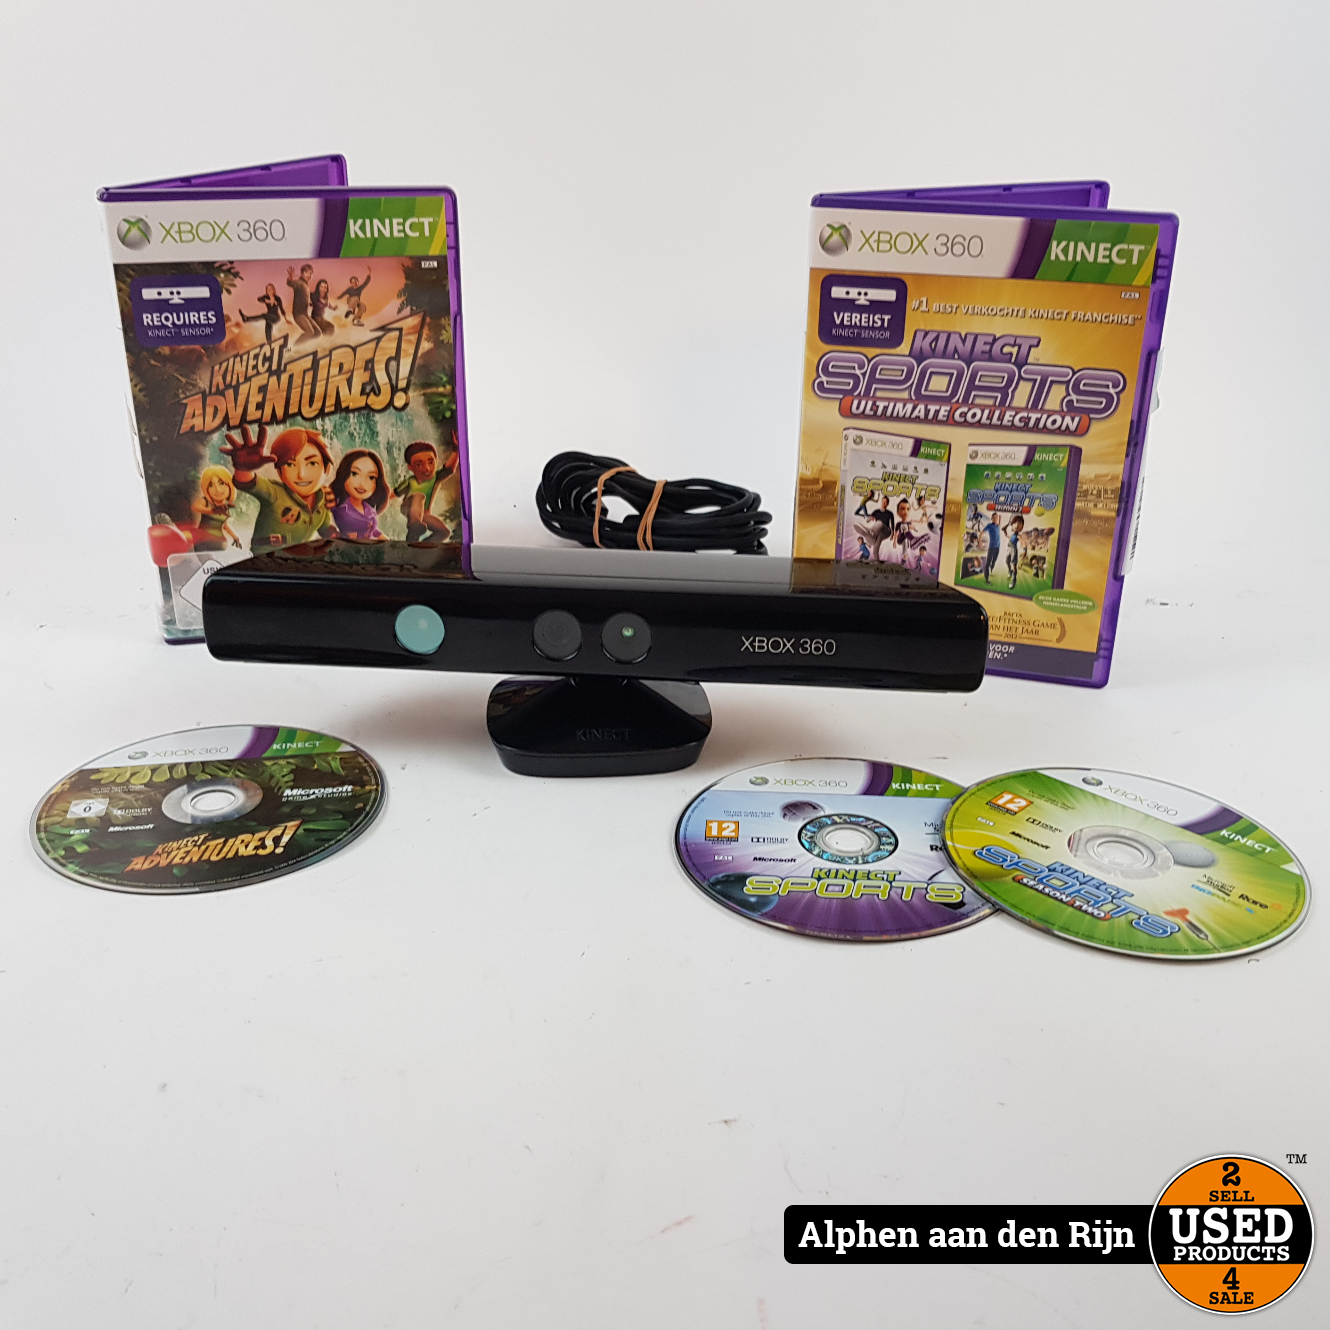 Xbox 360 + Games - Products Alphen aan den Rijn